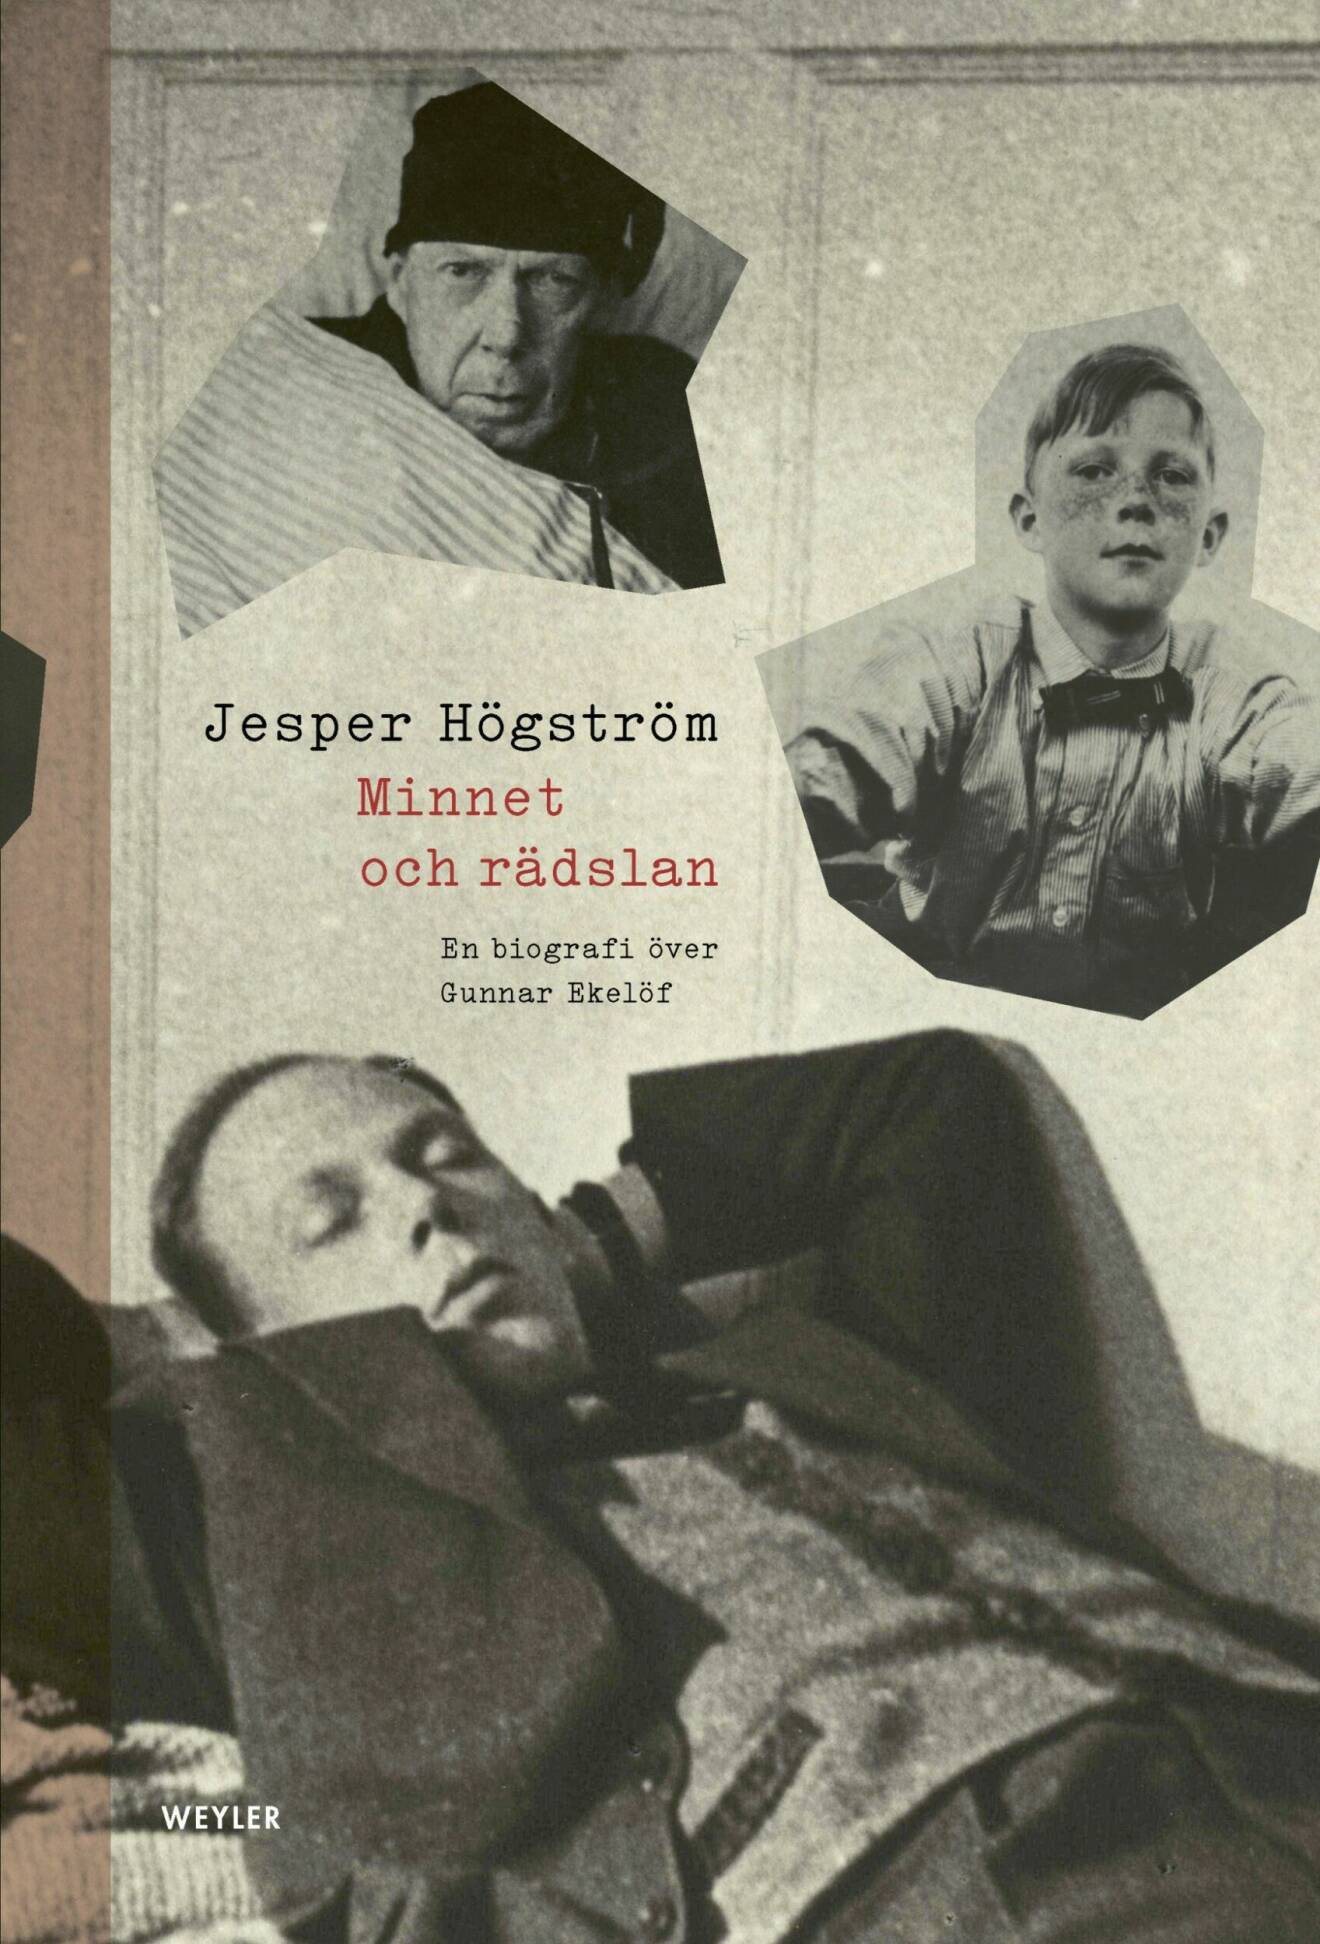 Minnet och rädslan – en biografi över Gunnar Ekelöf av Jesper Högström (Weyler förlag).